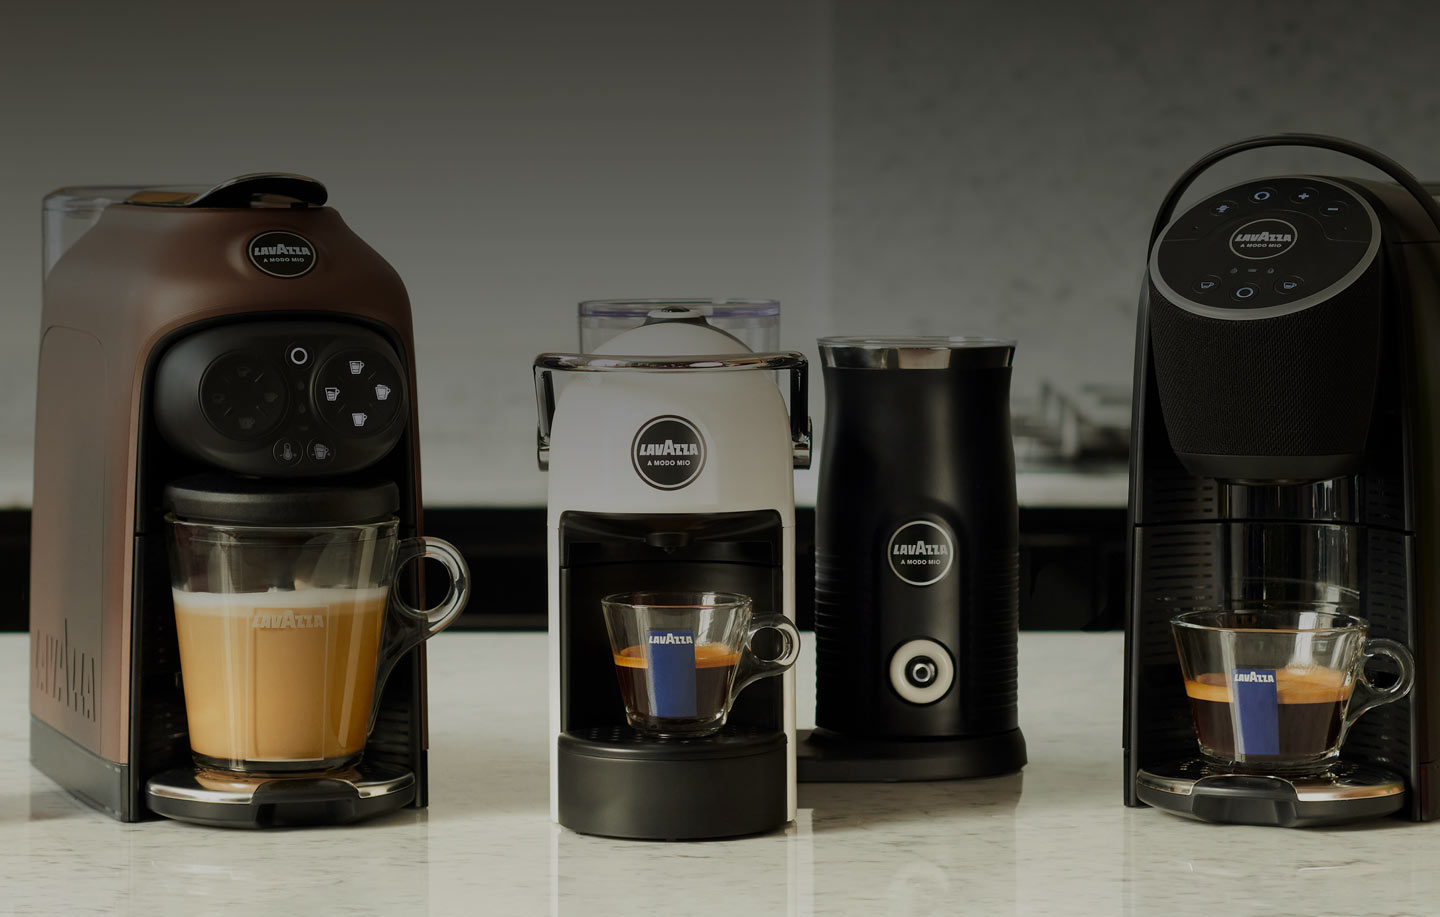 hylde Lære udenad økse Hvordan rengør du en kaffemaskine? | Lavazza